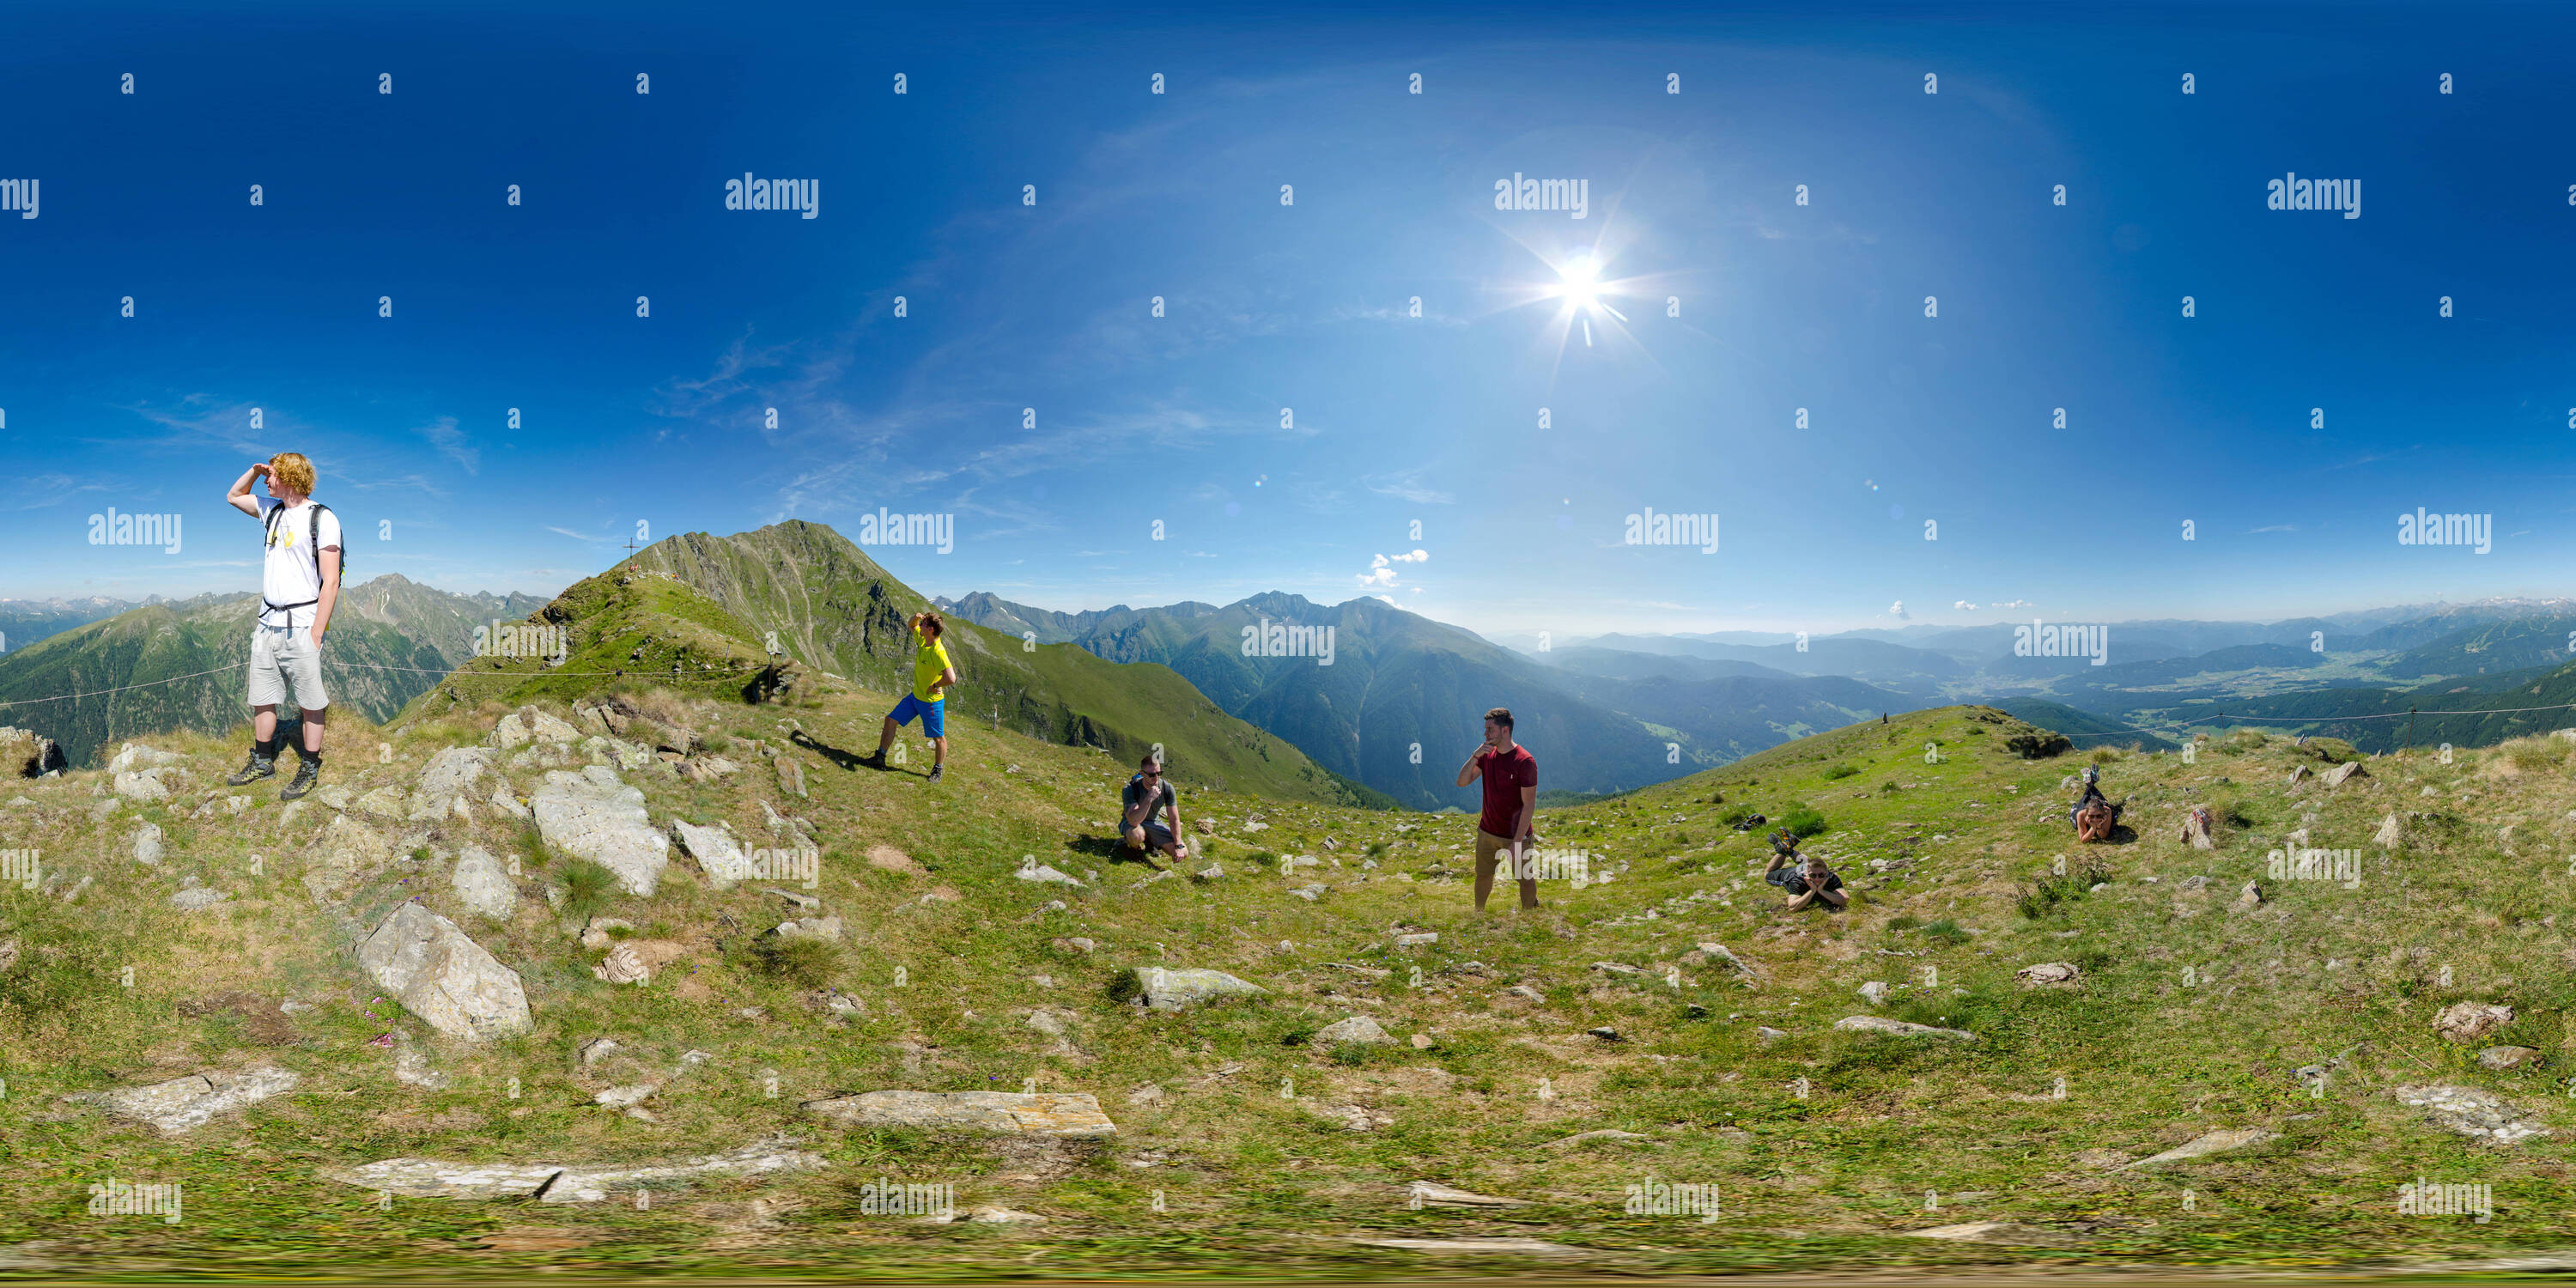 Vue panoramique à 360° de Gumma avec vos amis - 2316m